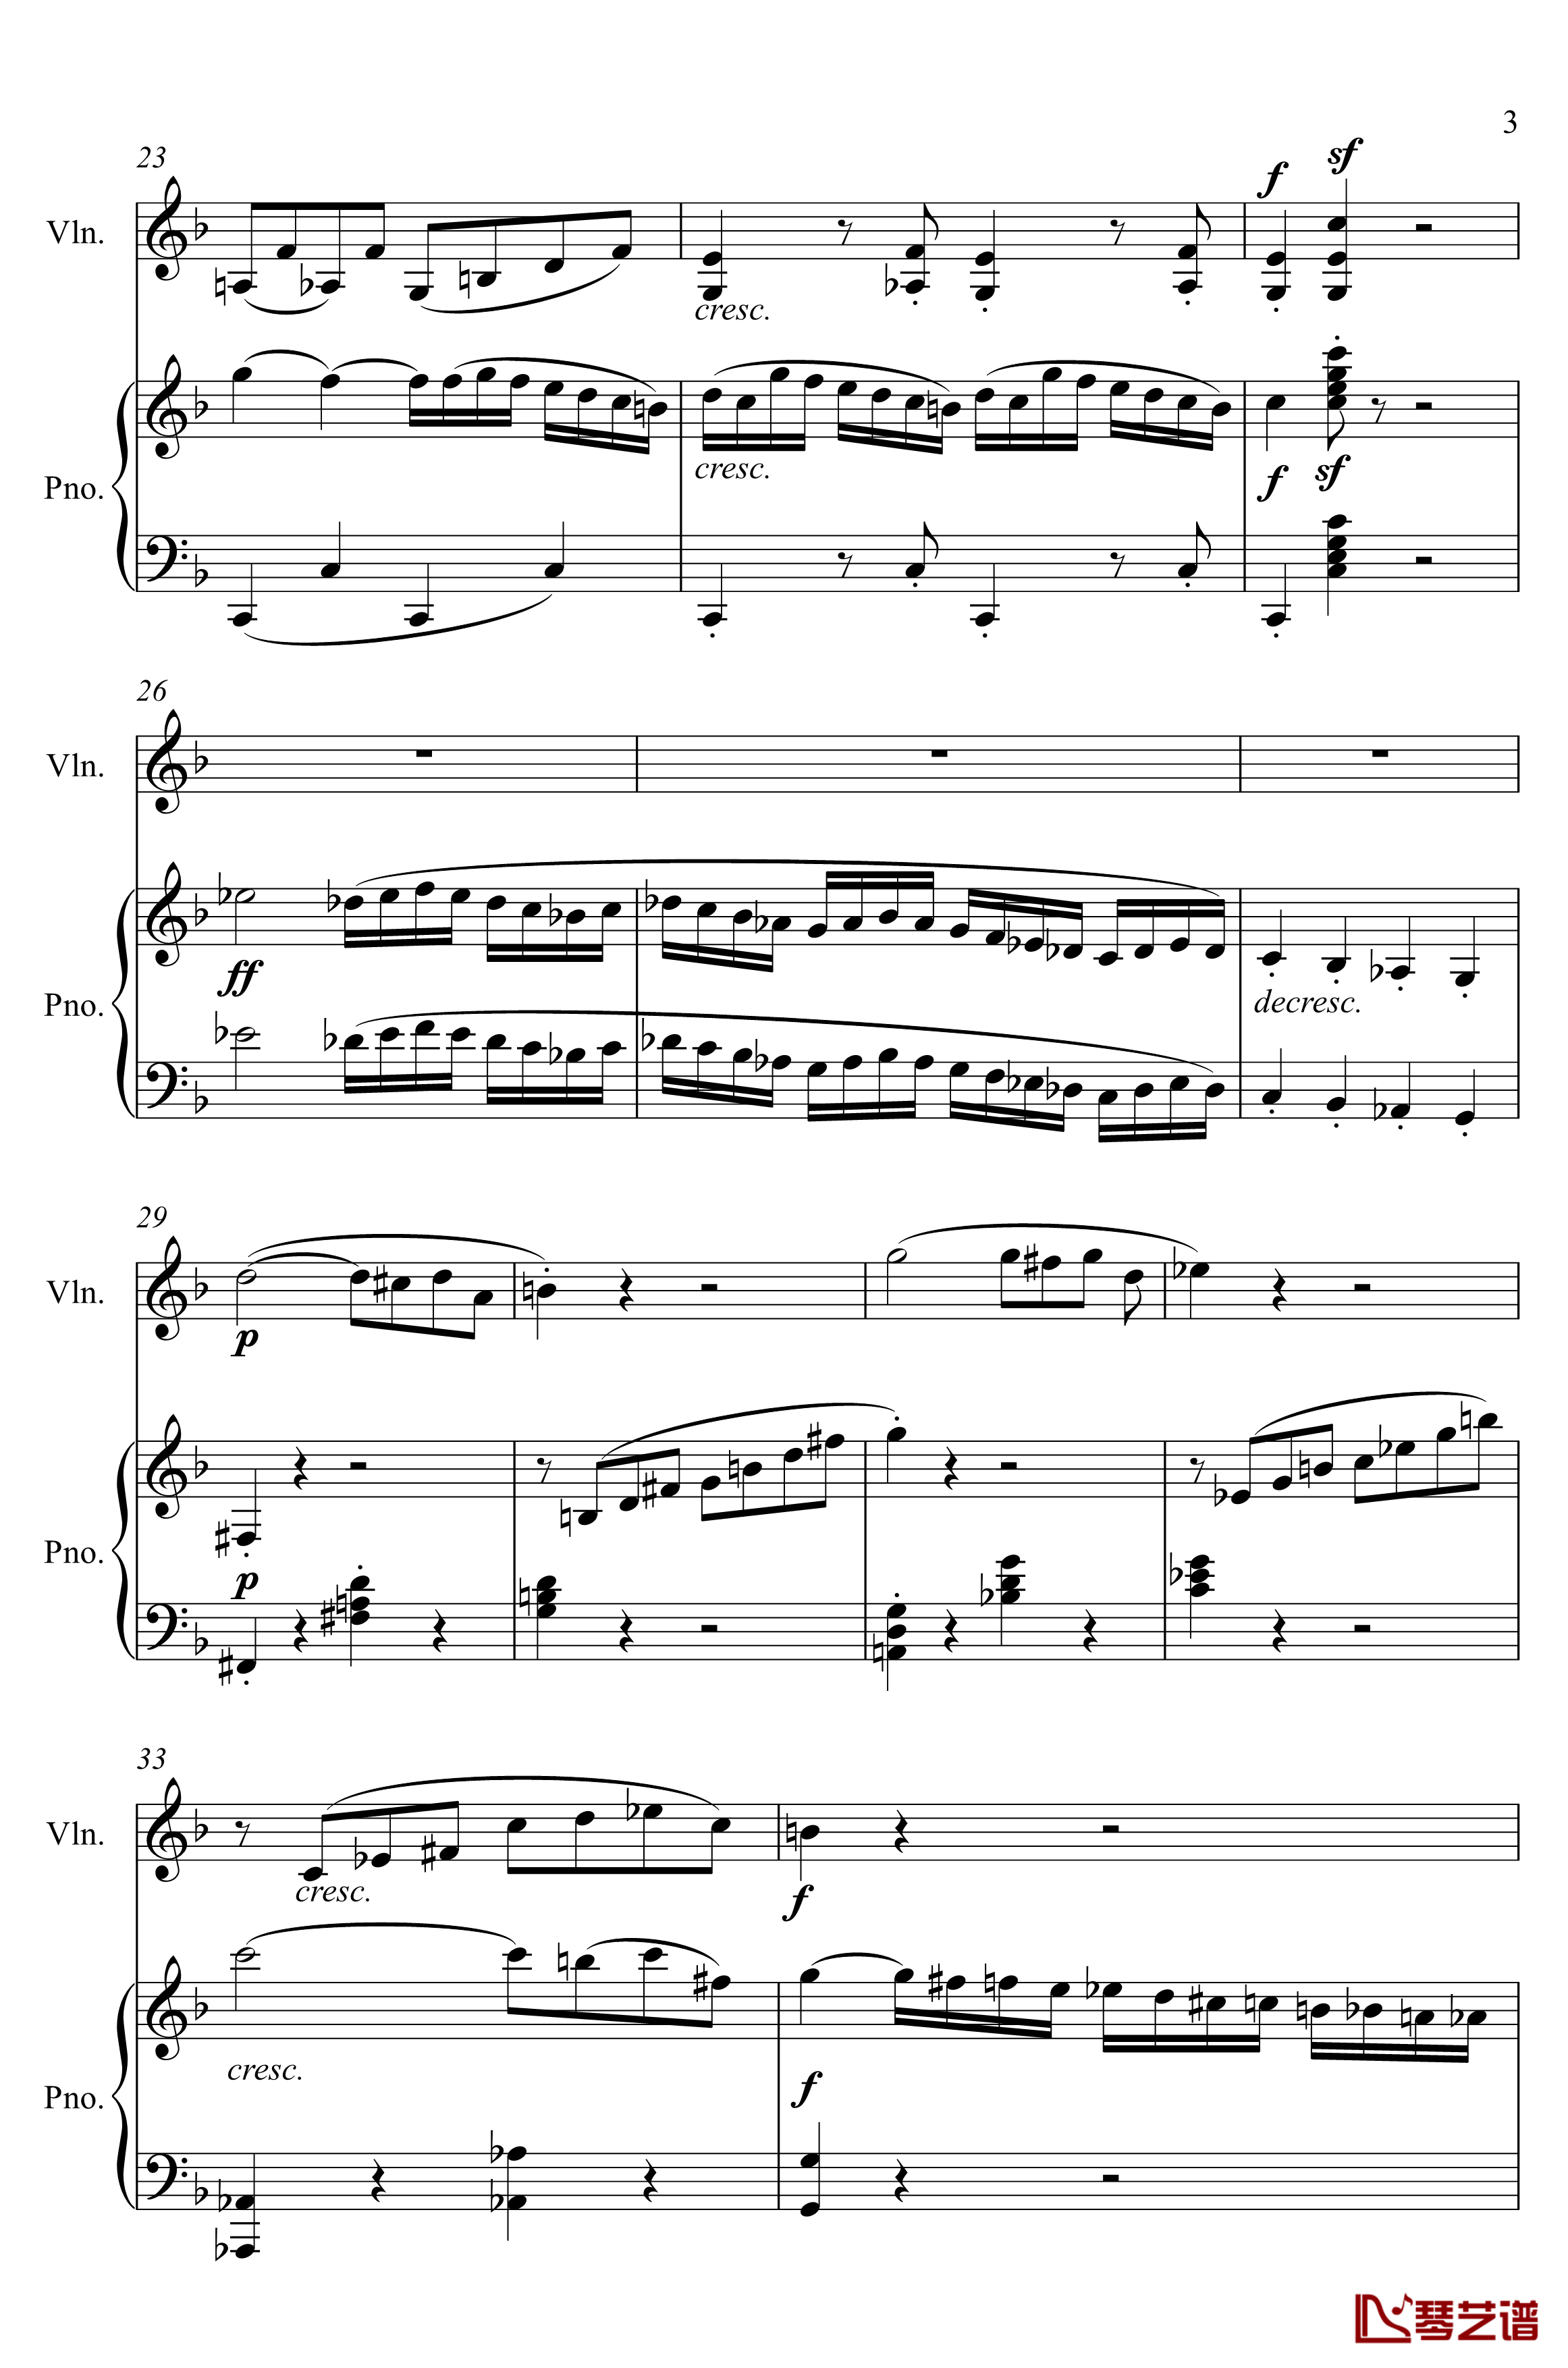 第5小提琴与钢琴奏鸣曲钢琴谱-第一乐章钢琴谱-贝多芬-beethoven3